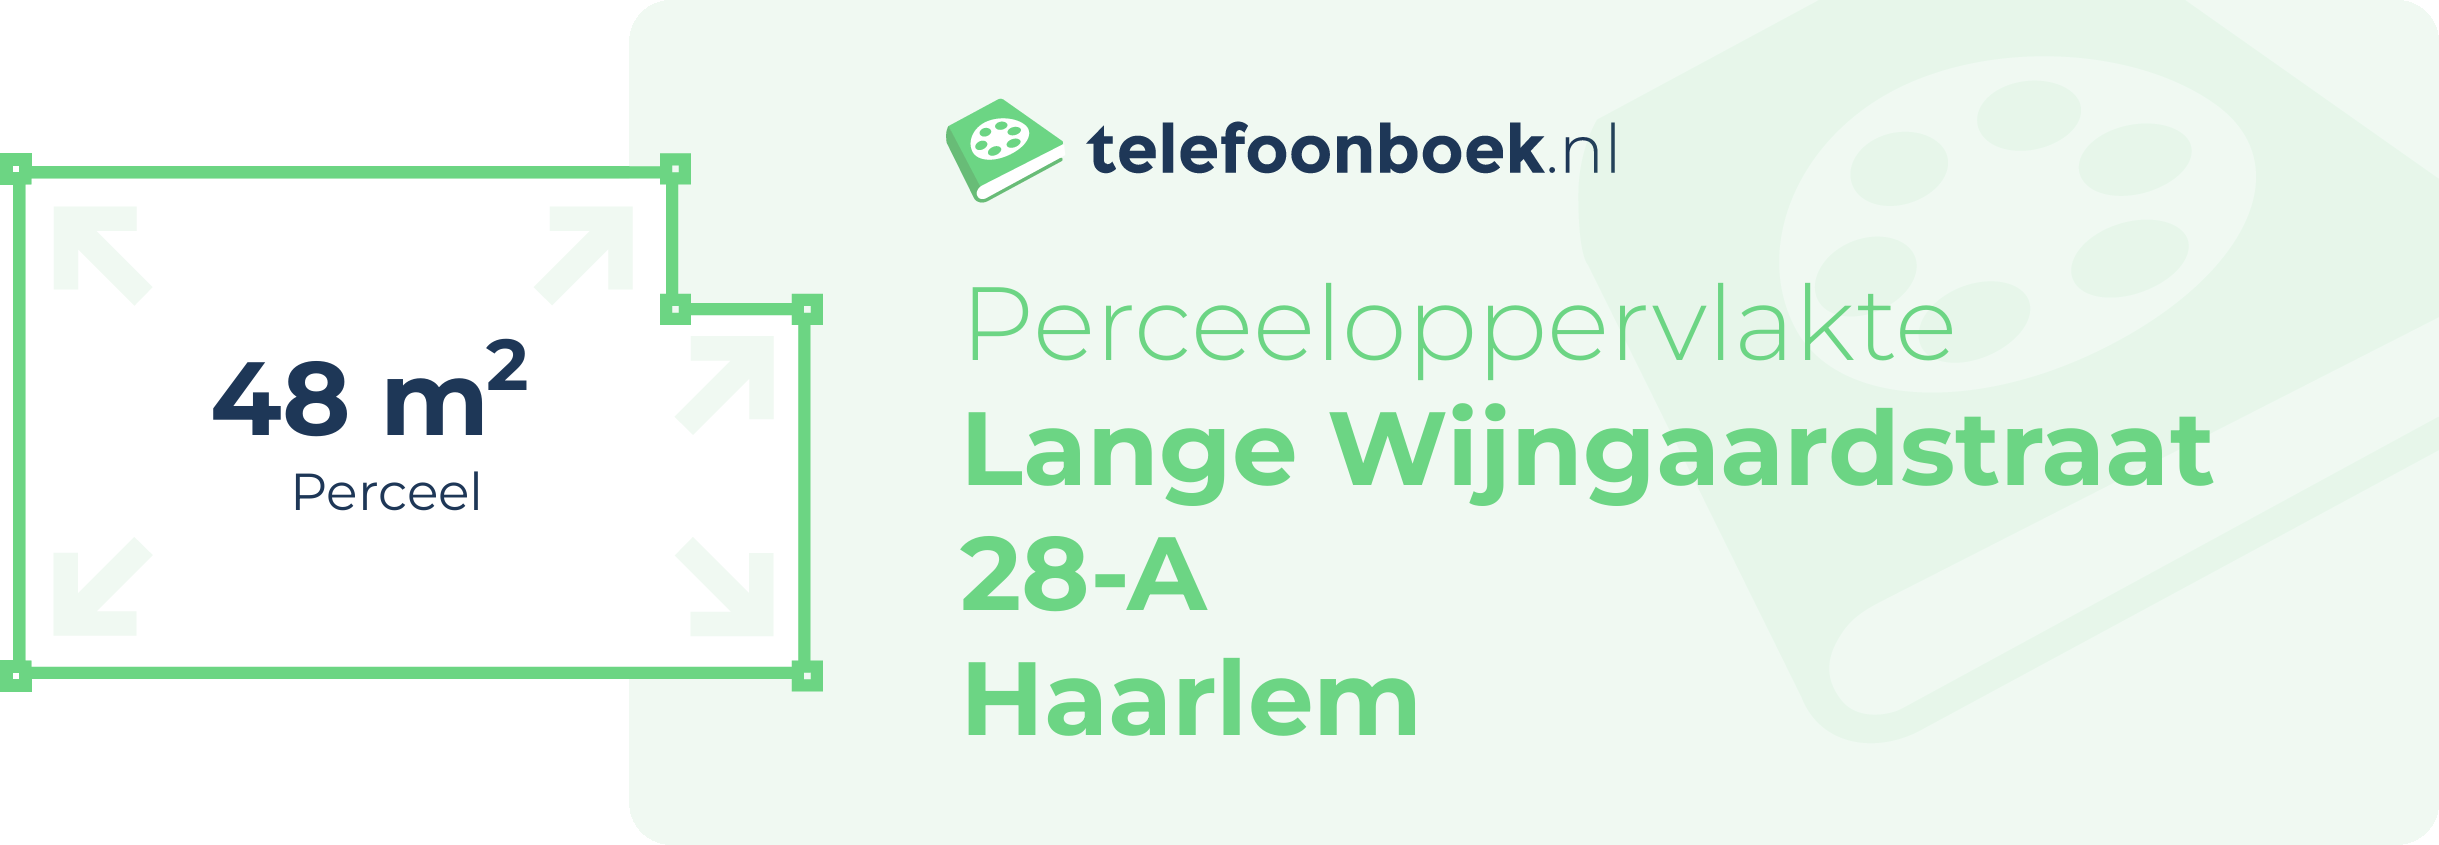 Perceeloppervlakte Lange Wijngaardstraat 28-A Haarlem